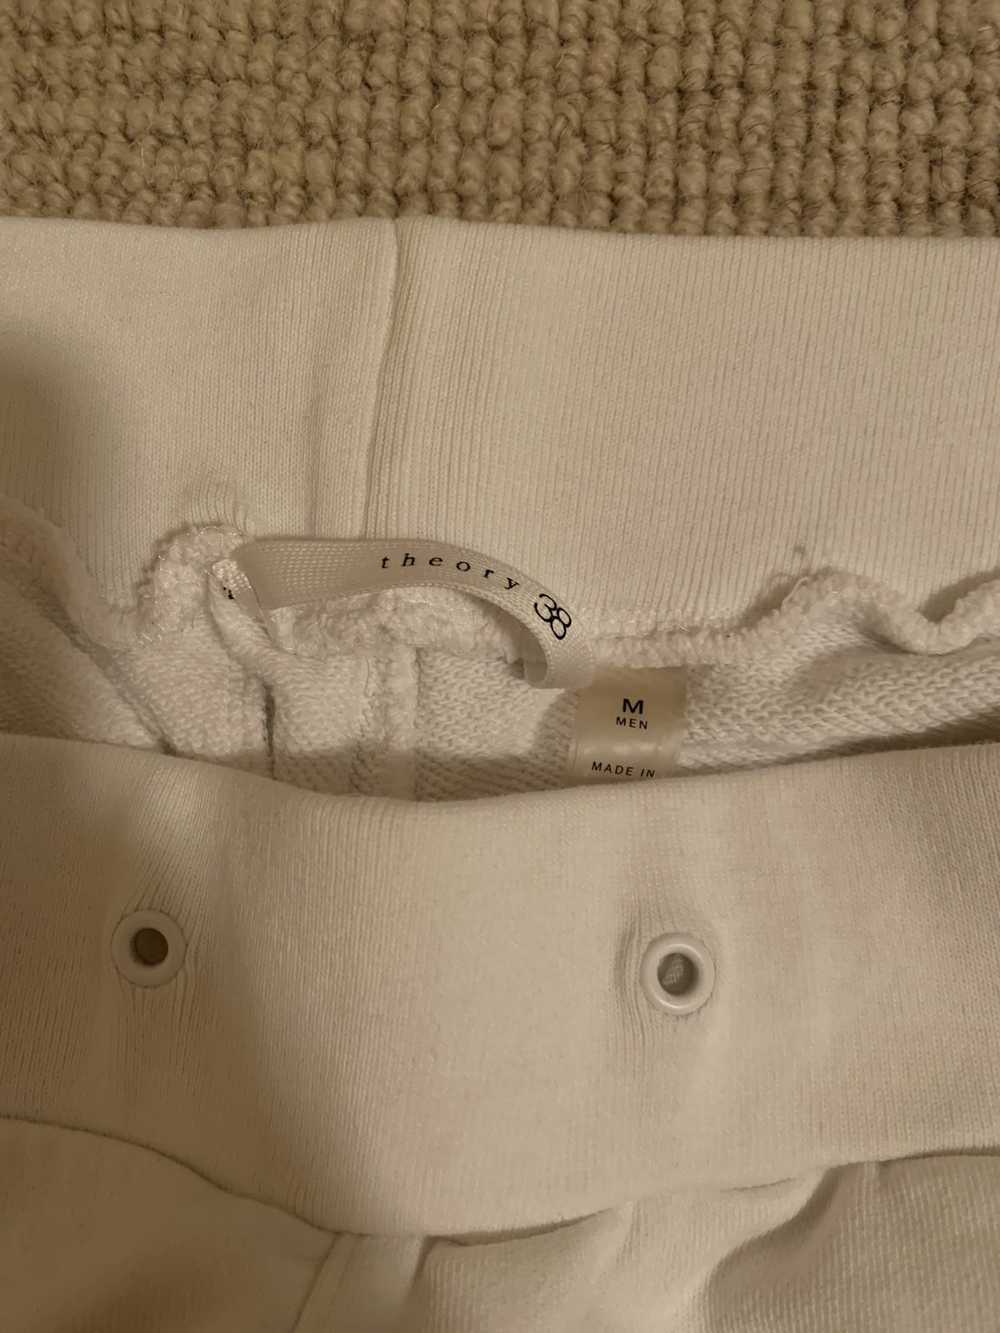 Theory THEORY White cotton sweatpants size M - image 3